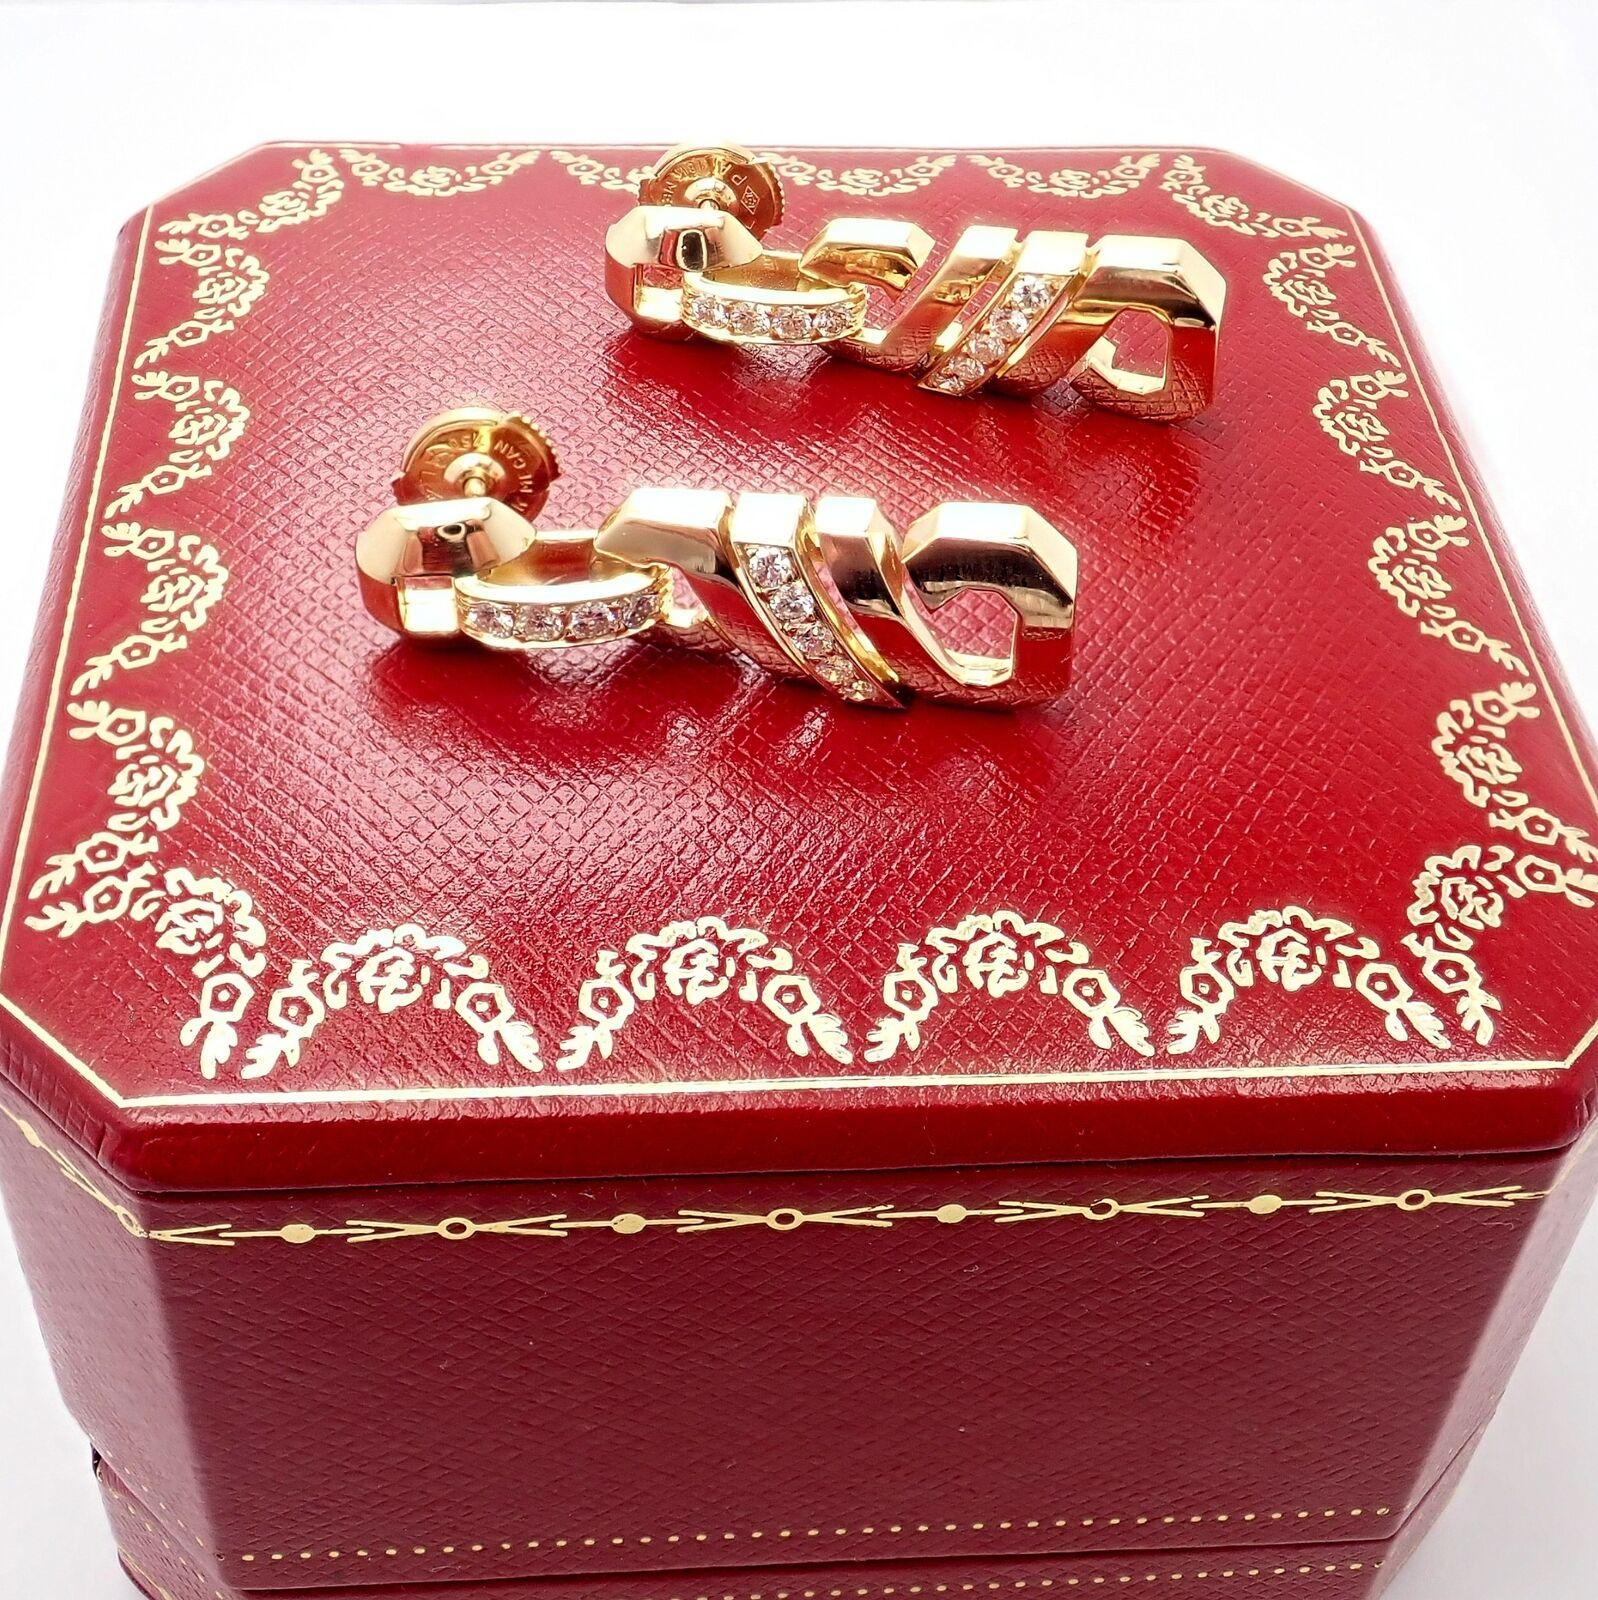 18k Gelbgold Fox Trot Diamond Ohrringe von Cartier aus den 1980er Jahren.
Mit 18 runden Diamanten im Brillantschliff VVS1 Reinheit, E Farbe Gesamtgewicht ca. 0,50ct
Dieses atemberaubende Paar Ohrringe wird in einer Cartier-Box